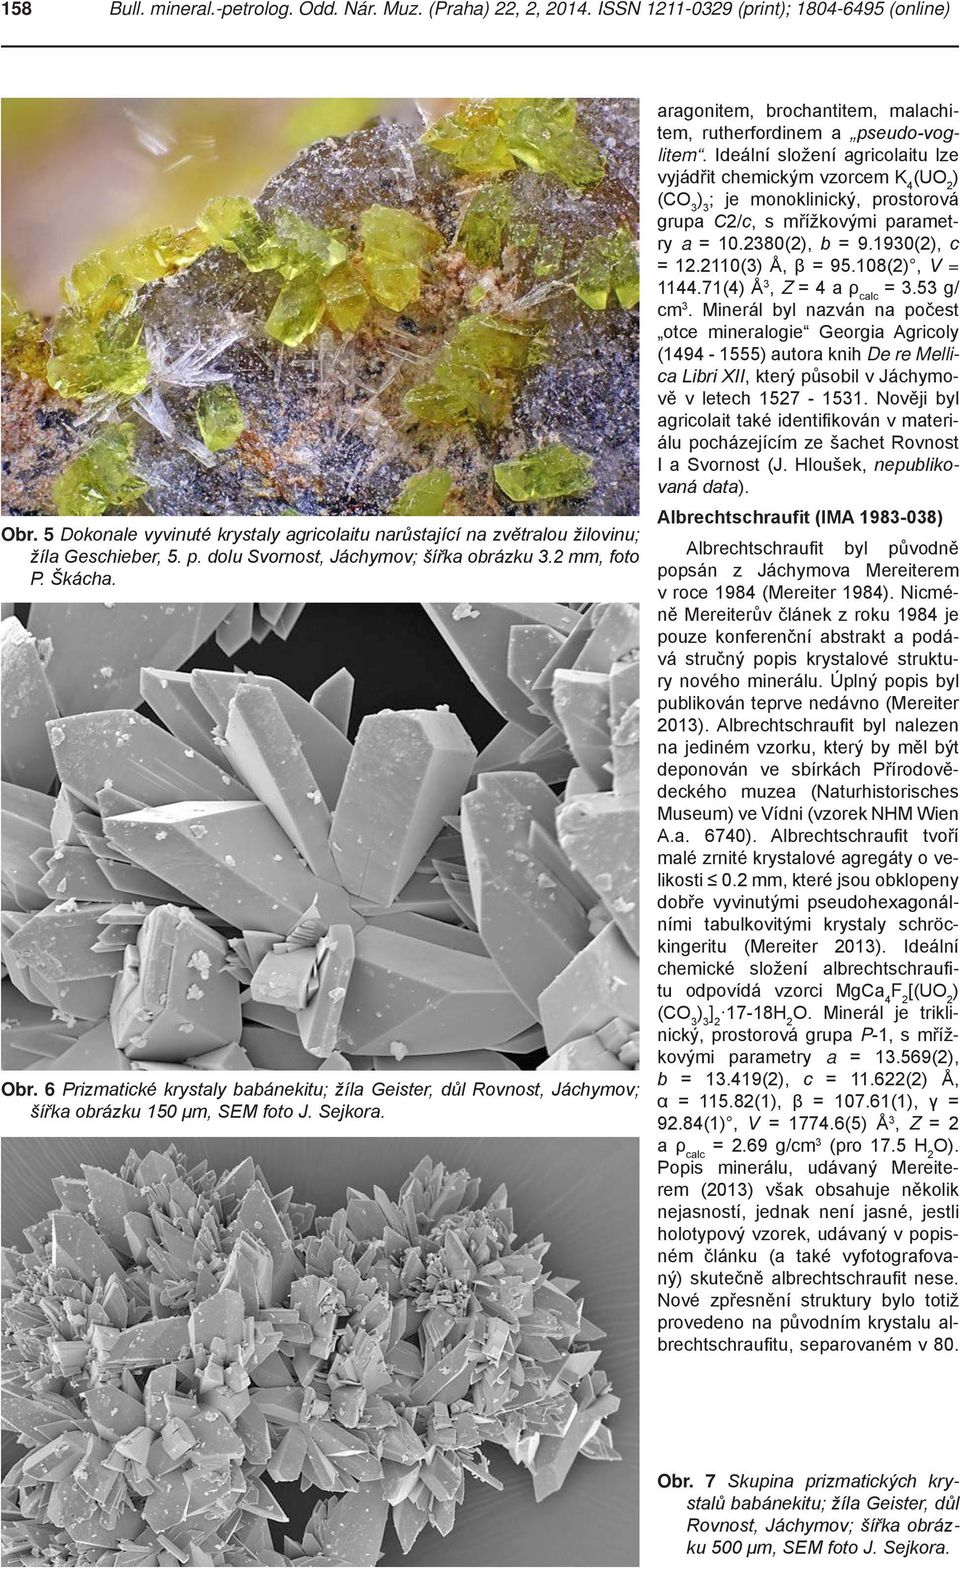 6 Prizmatické krystaly babánekitu; žíla Geister, důl Rovnost, Jáchymov; šířka obrázku 150 μm, SEM foto J. Sejkora. aragonitem, brochantitem, malachitem, rutherfordinem a pseudo-voglitem.